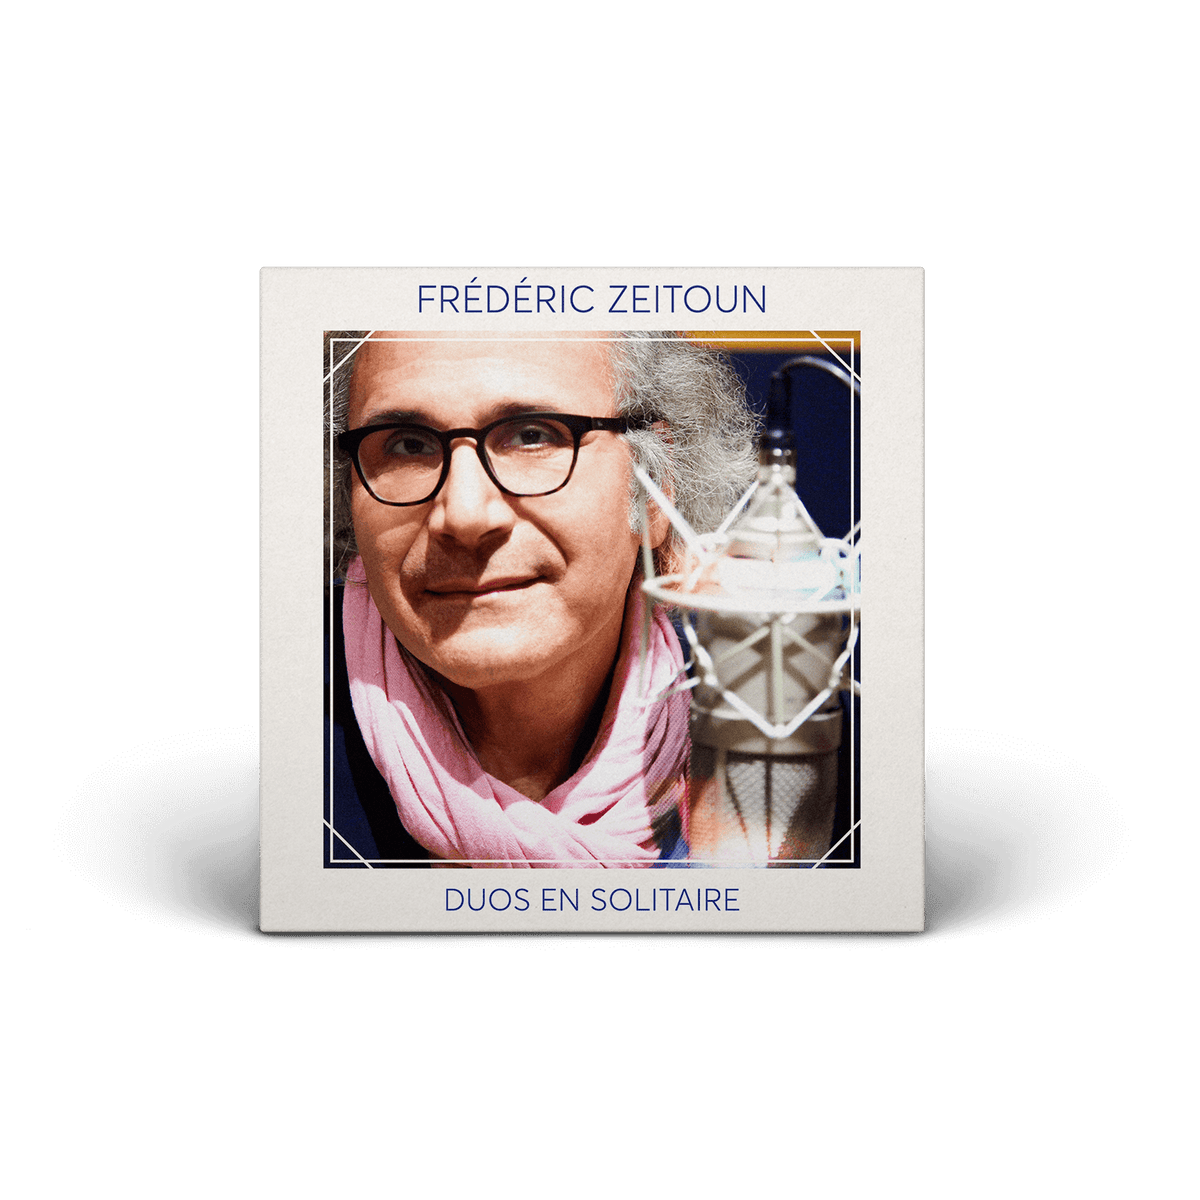 Frédéric Zeitoun - Duos en solitaire - Digital